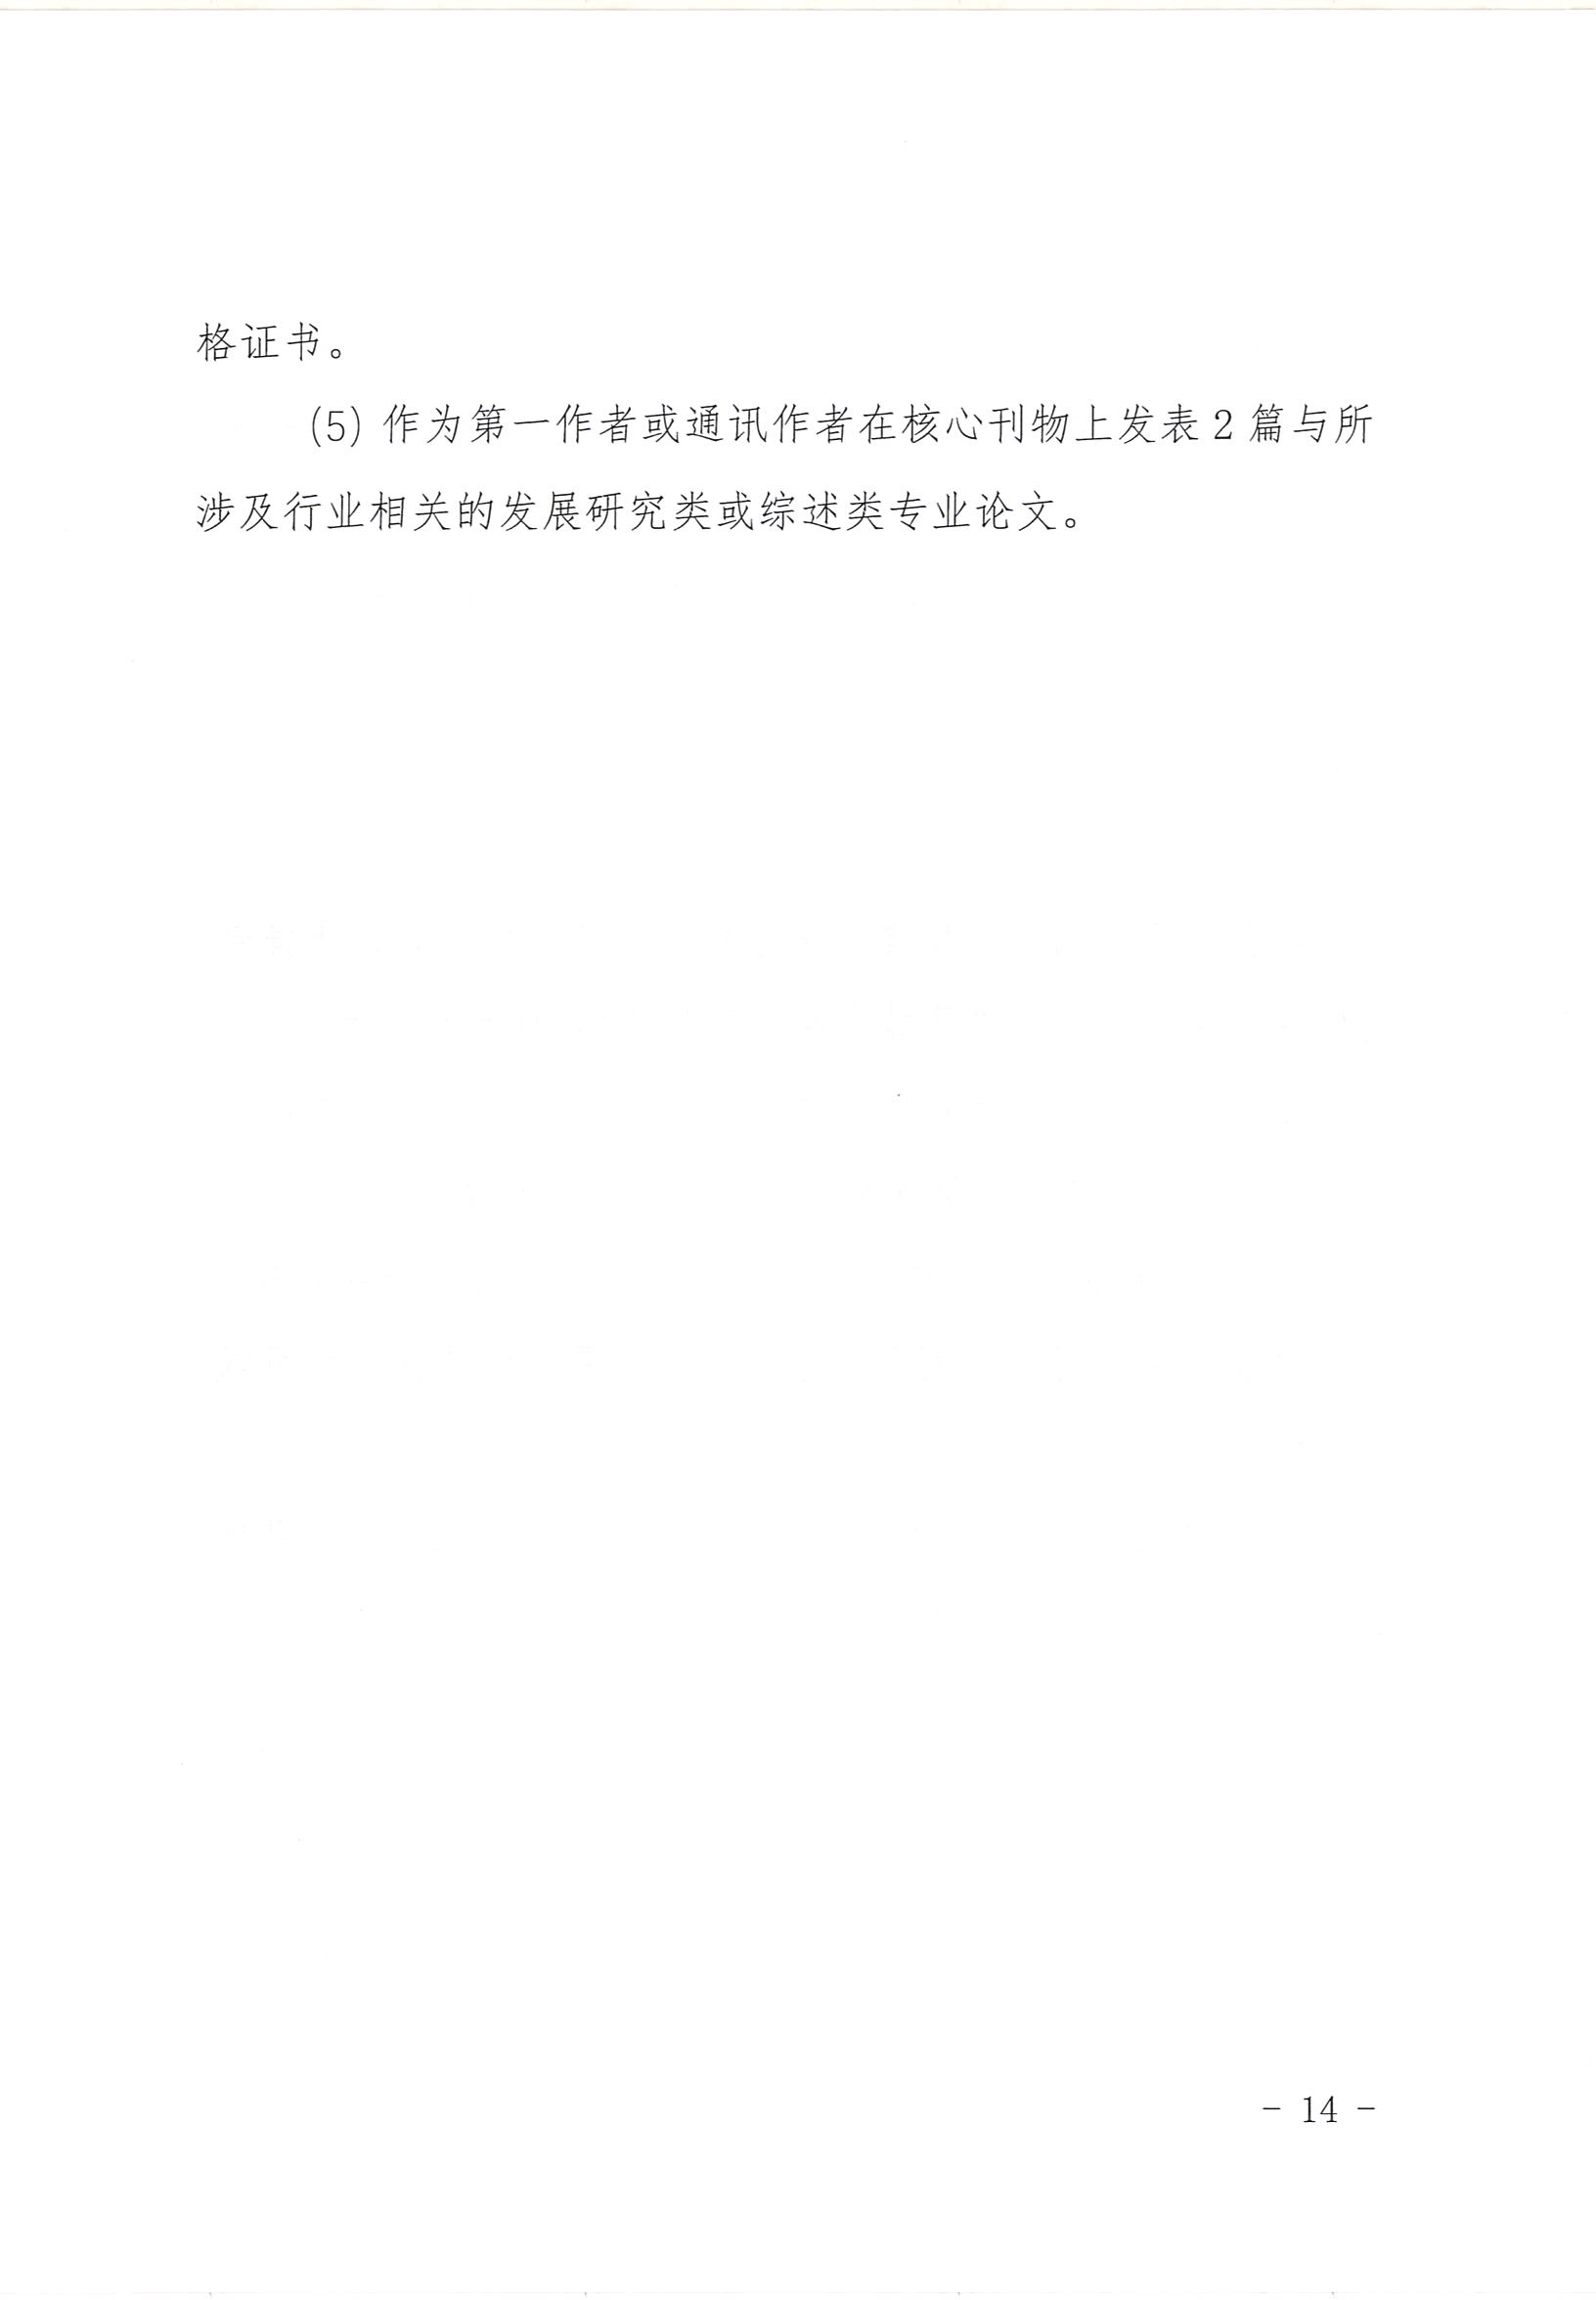 青海省轻工业研究所有限责任公司关于成立专业技术委员会的通知(2)_页面_14.jpg